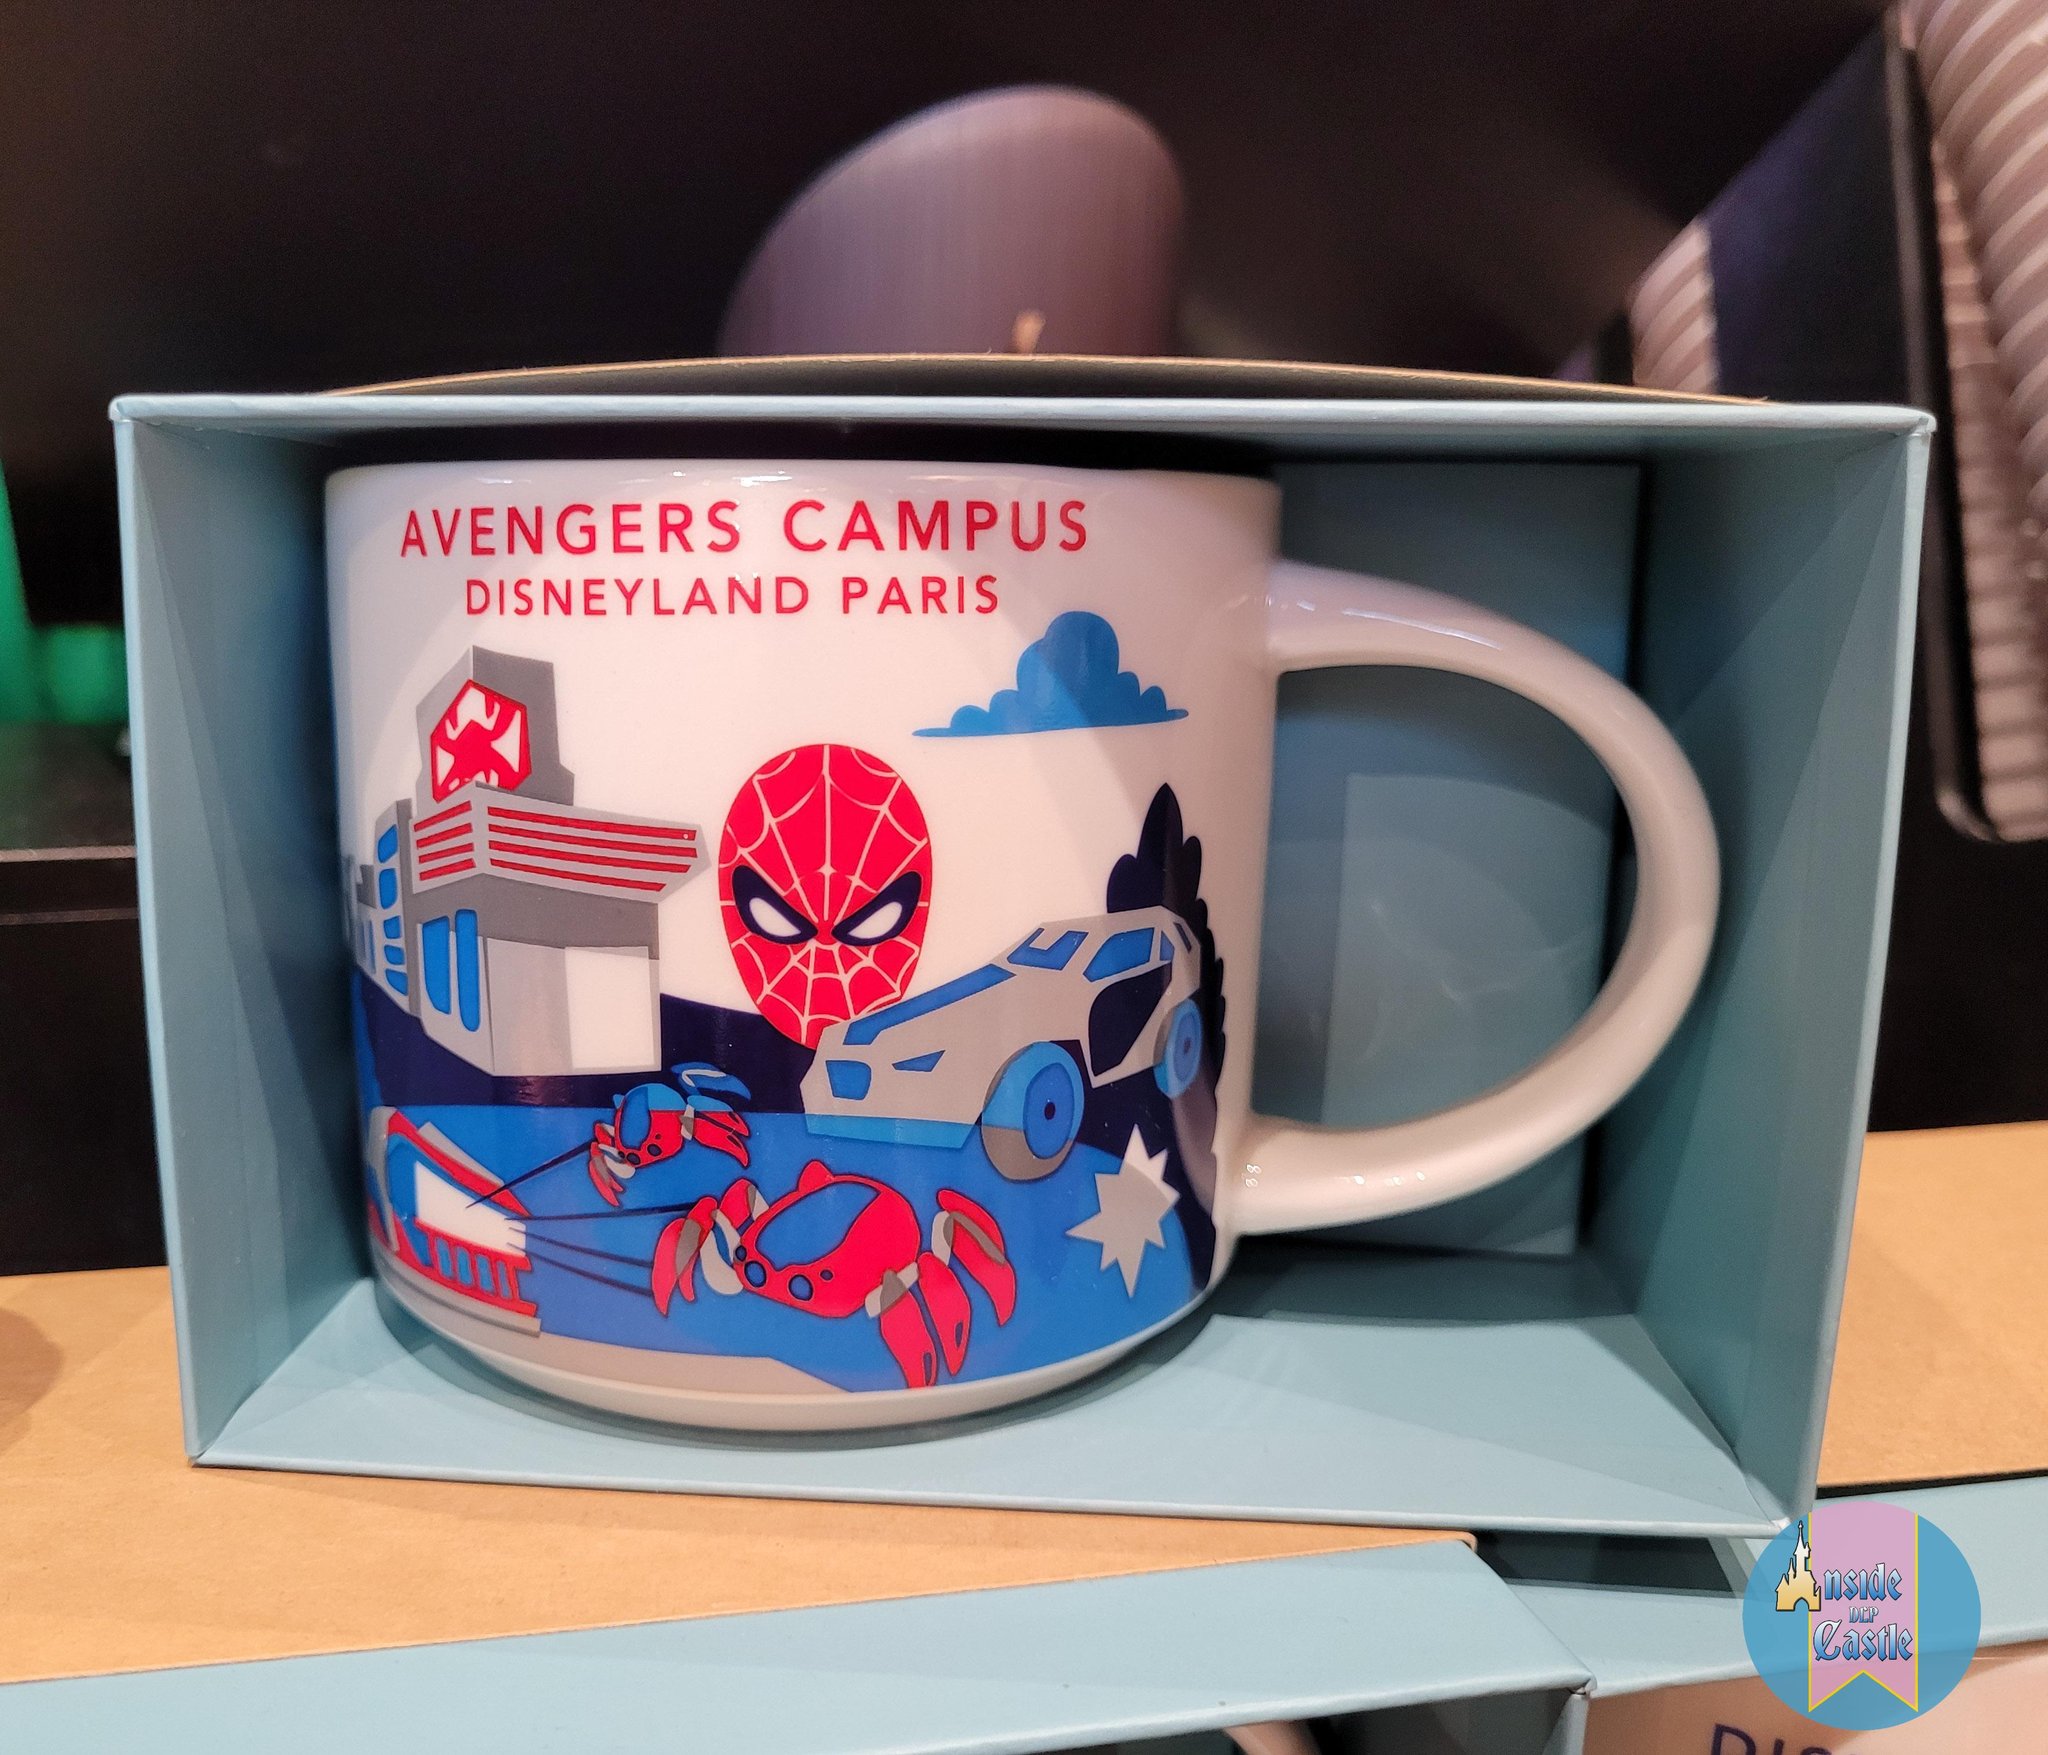 InsideDlpCastle on X: "🛍Une nouvelle mug "Avengers Campus Disneyland  Paris" est disponible au @StarbucksFrance de Disney Village!🕸 #Starbuck  #Disneylandparis https://t.co/tZm3bP3D6T" / X